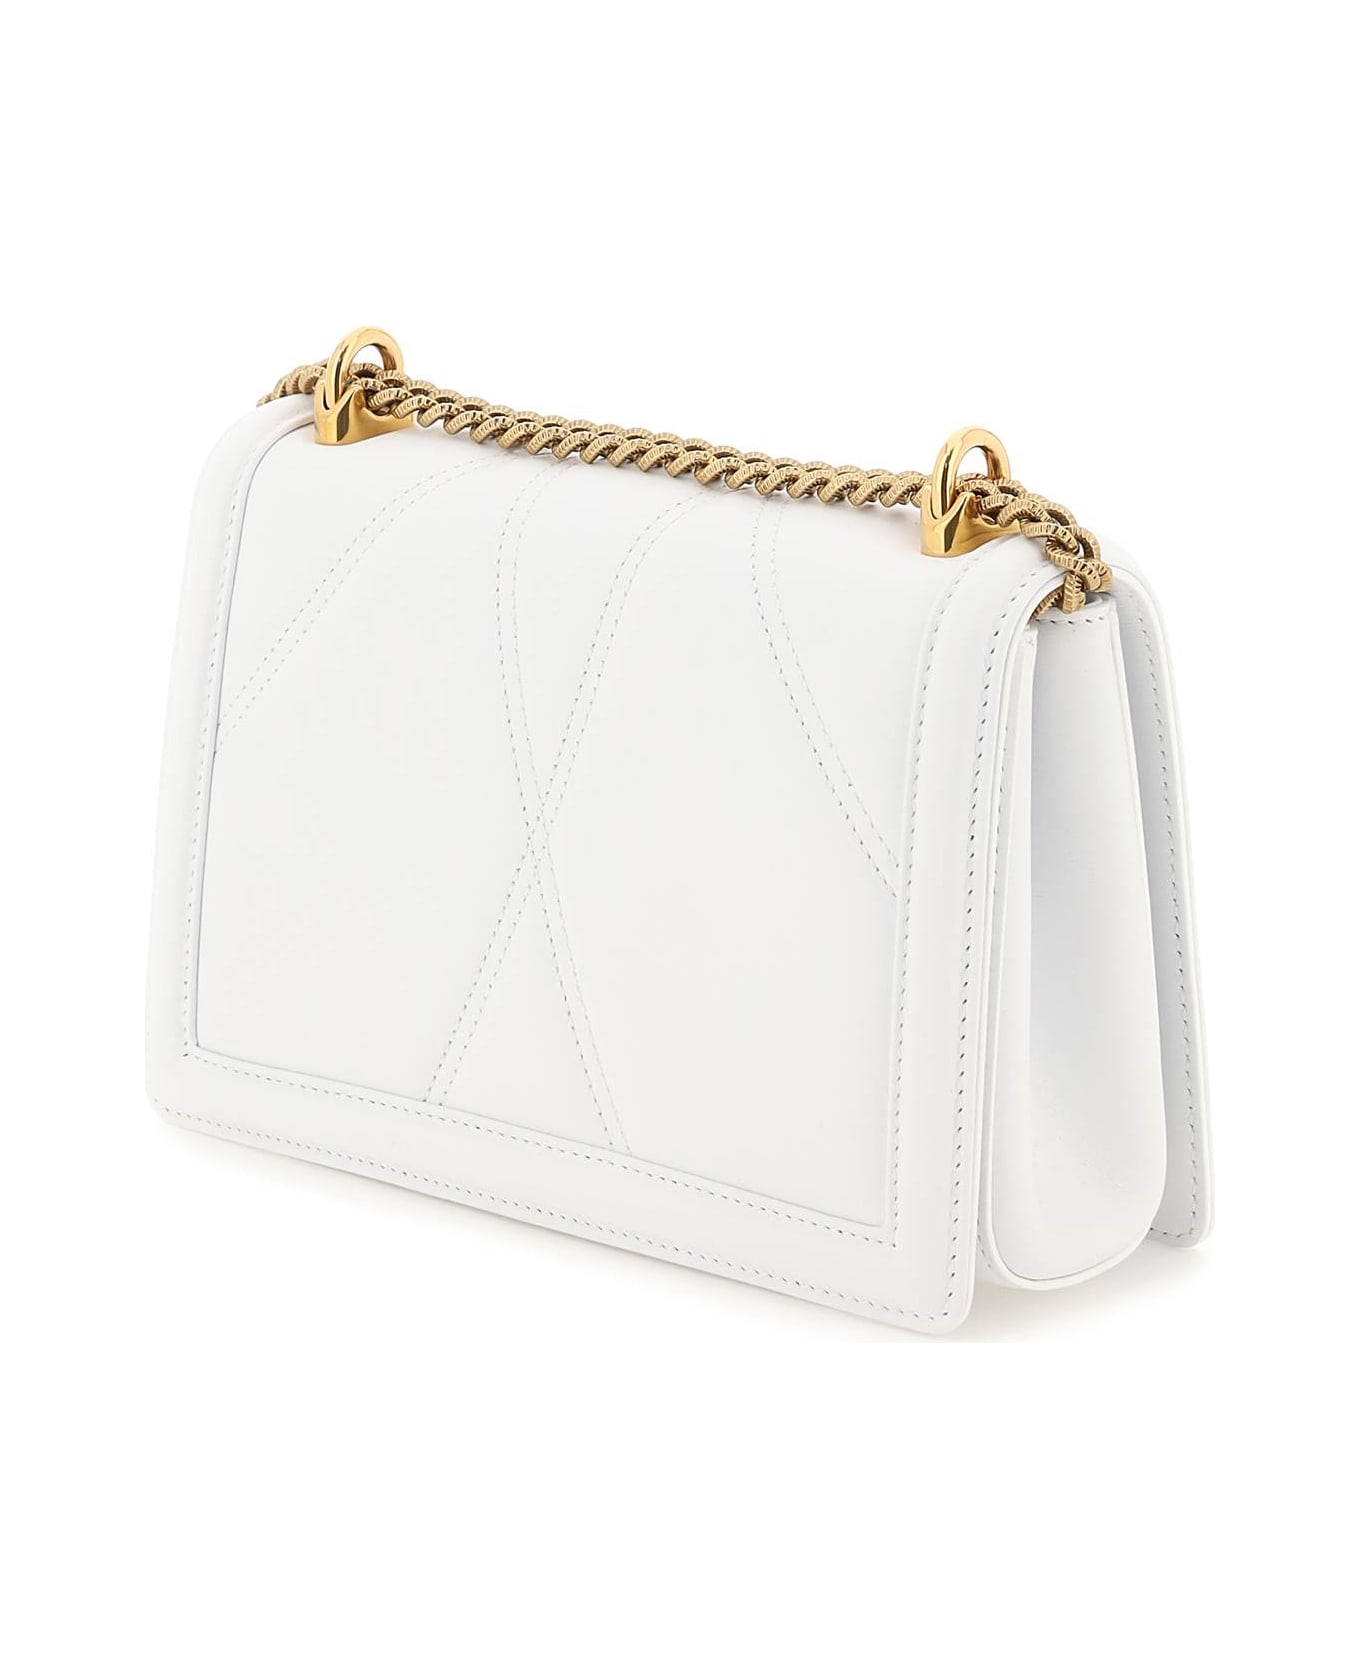 Dolce & Gabbana Devotion Bag - BIANCO OTTICO (White) ショルダーバッグ